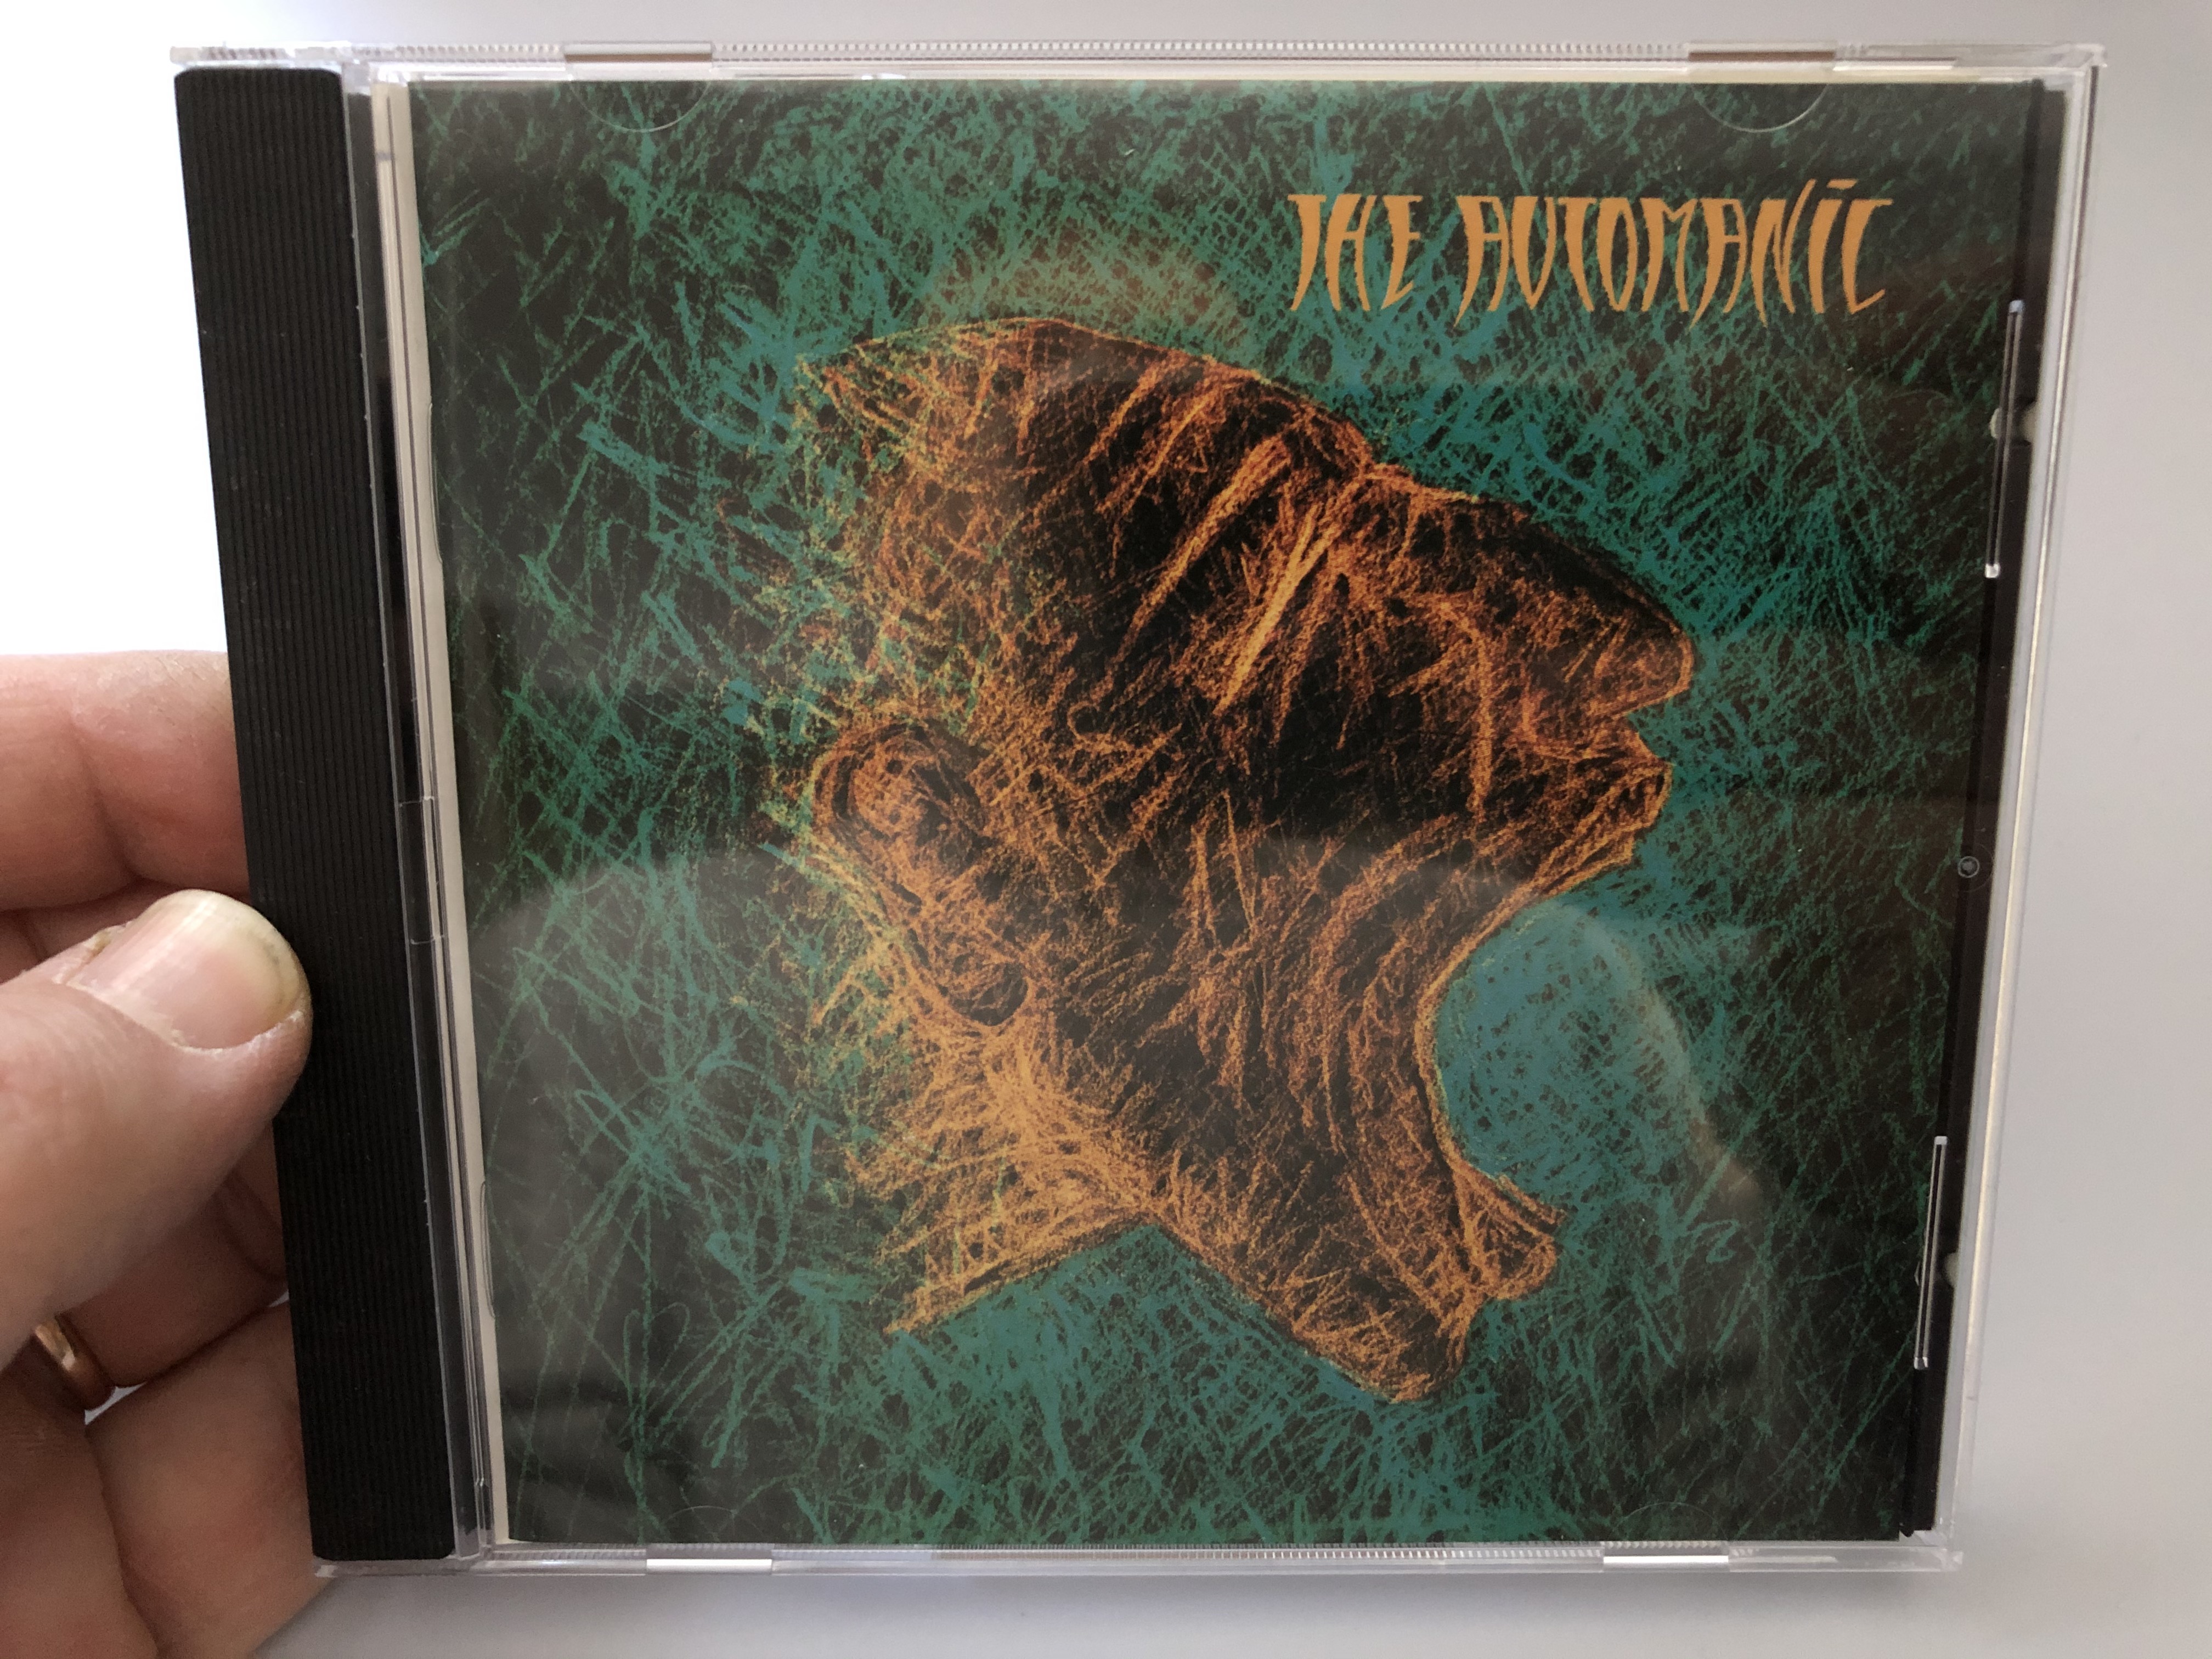 the-automanic-bellaphon-audio-cd-1994-290-07-212-1-.jpg